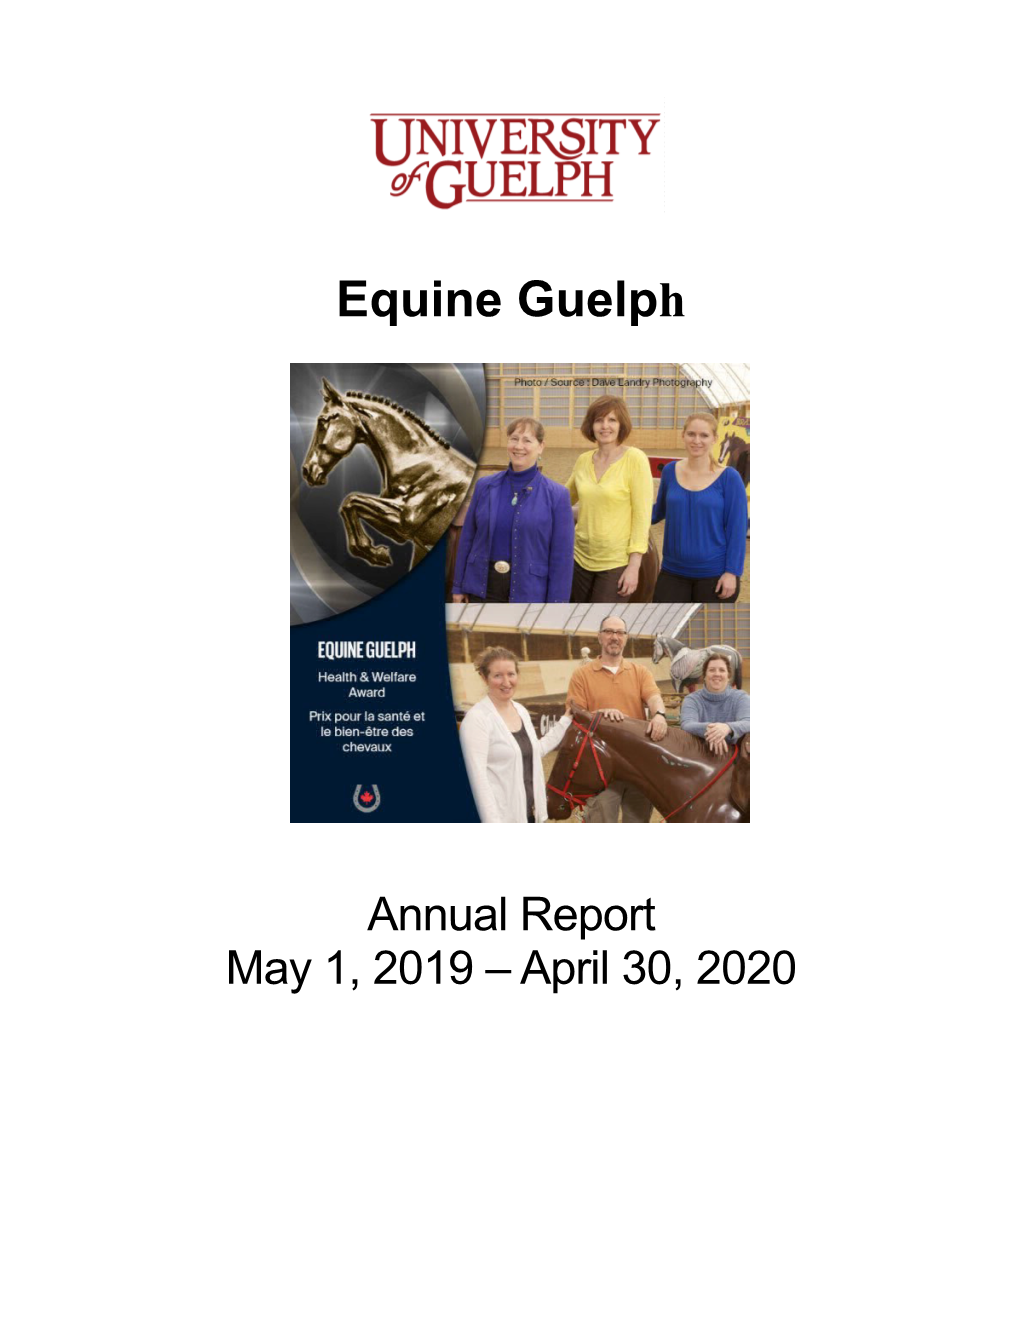 Annual Report May 1, 2019 – April 30, 2020